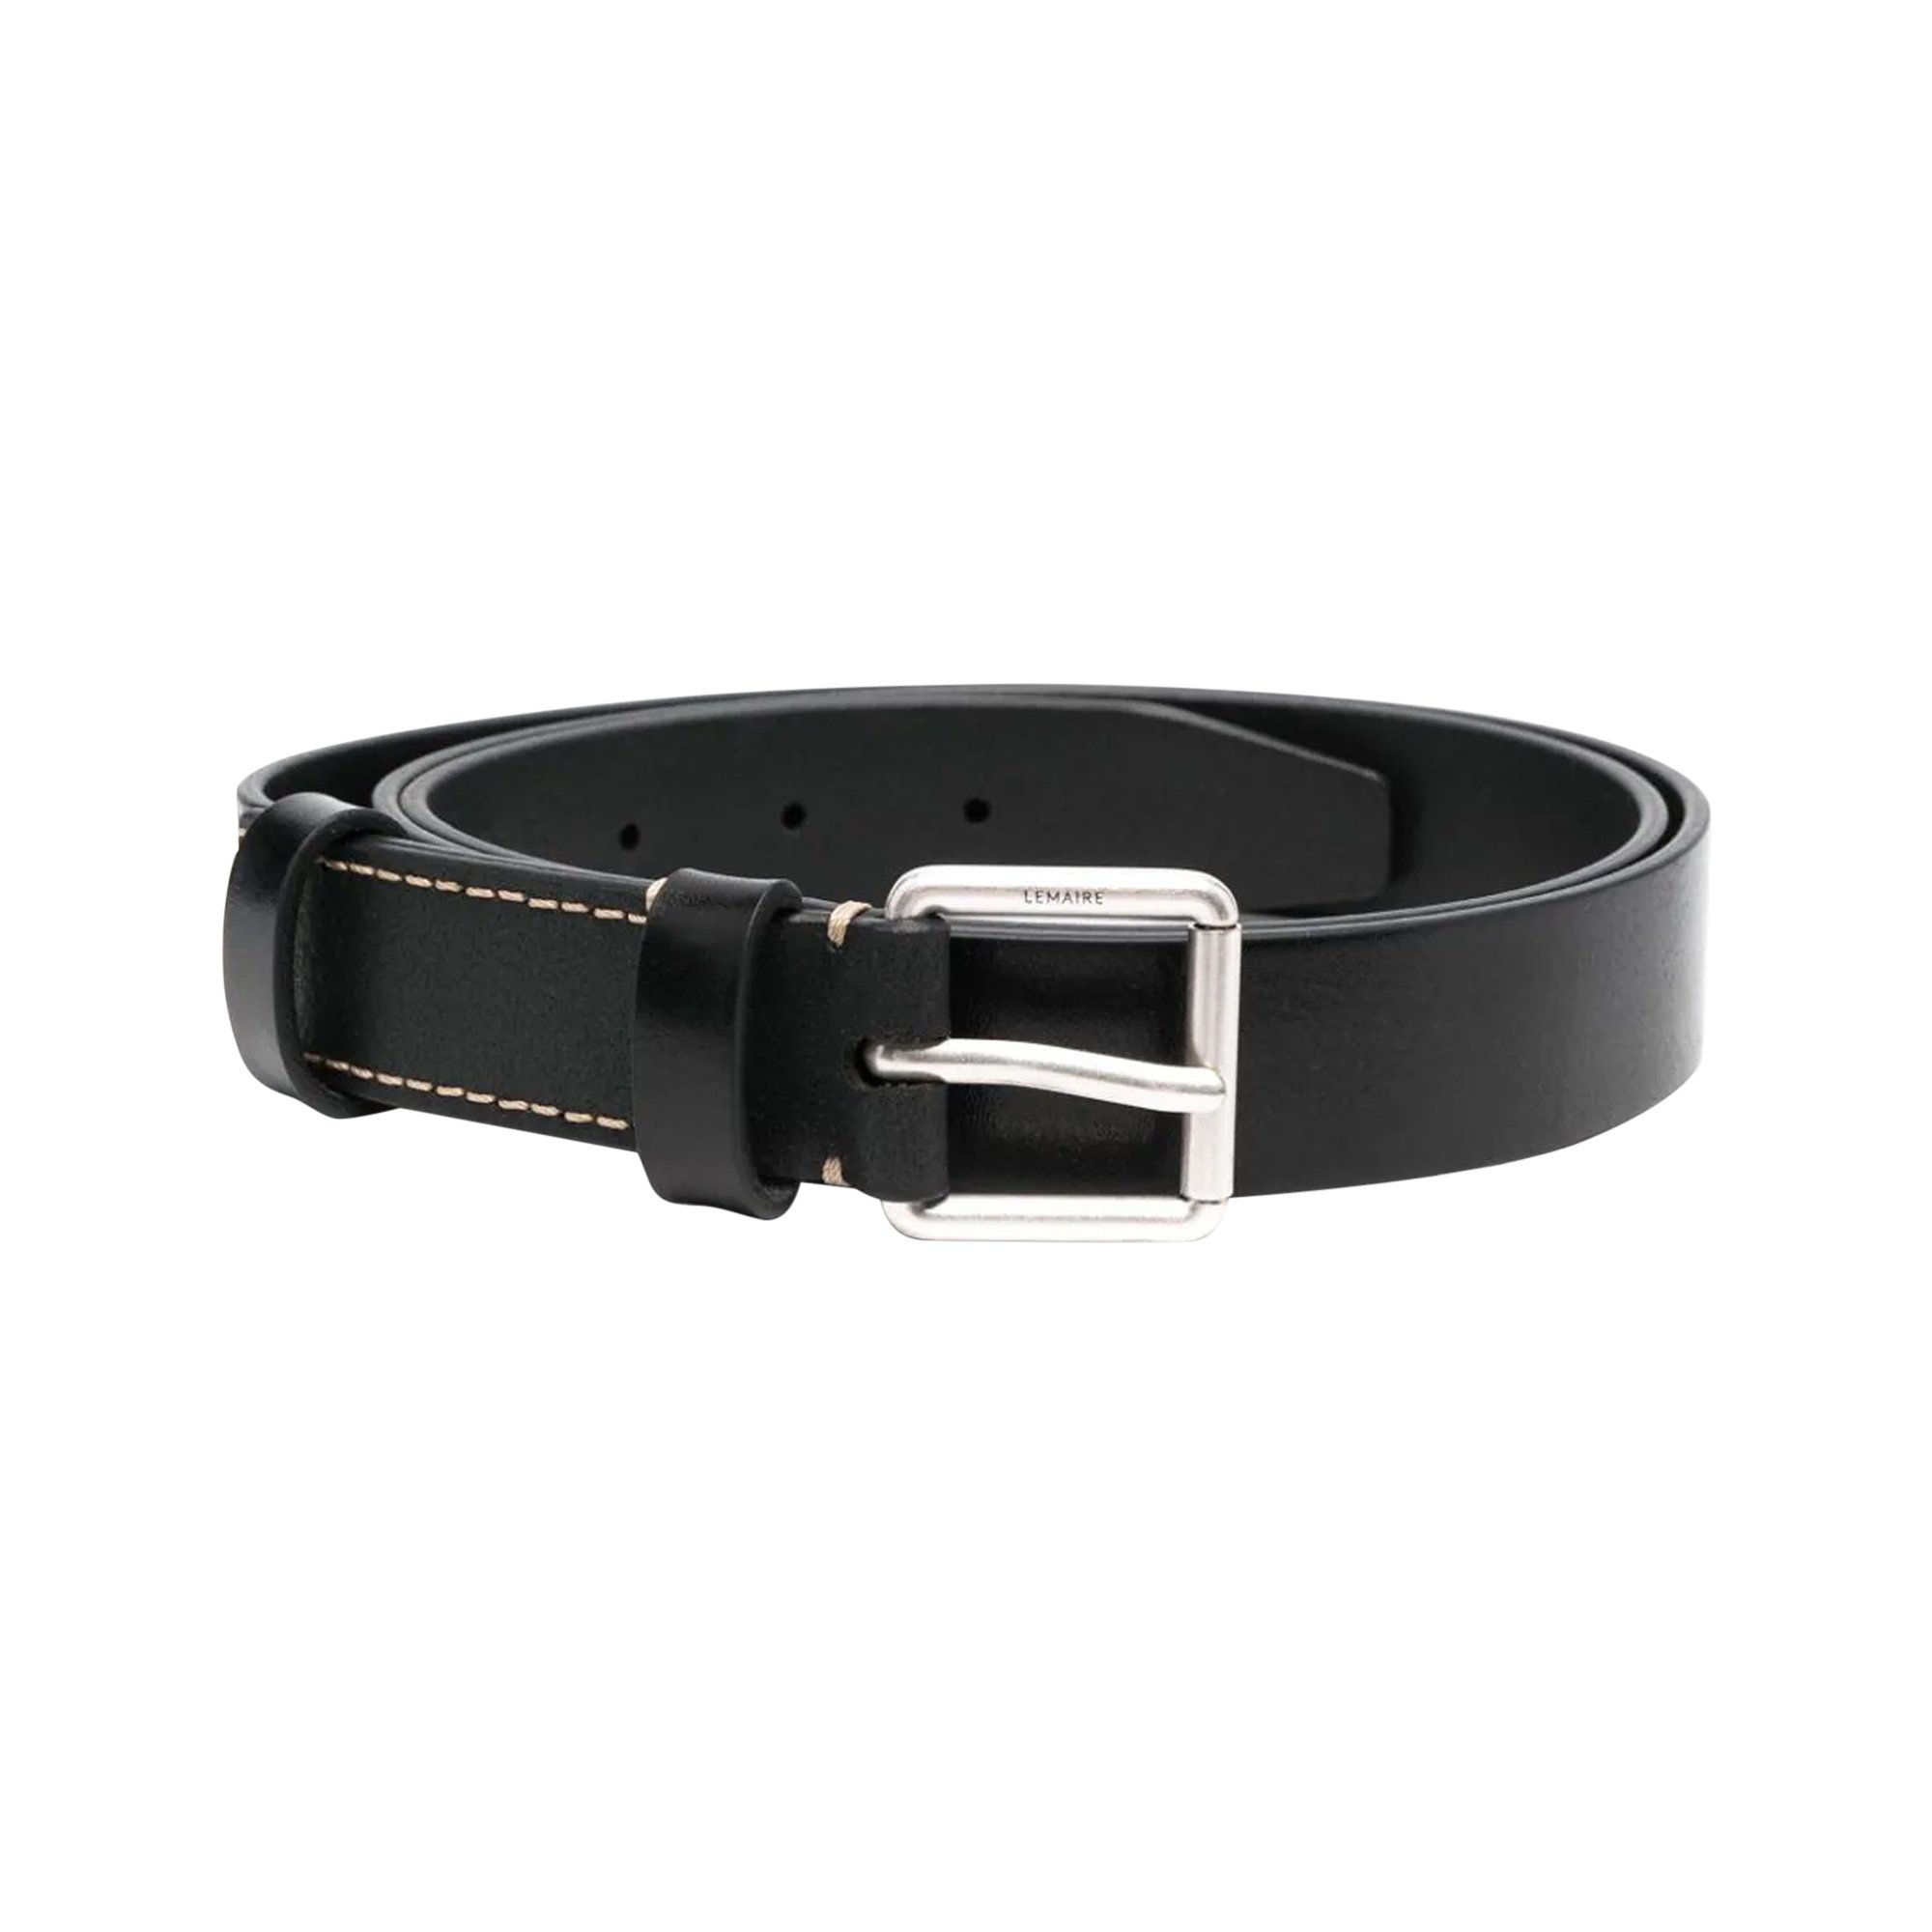 LEMAIRE skinny leather belt - Black